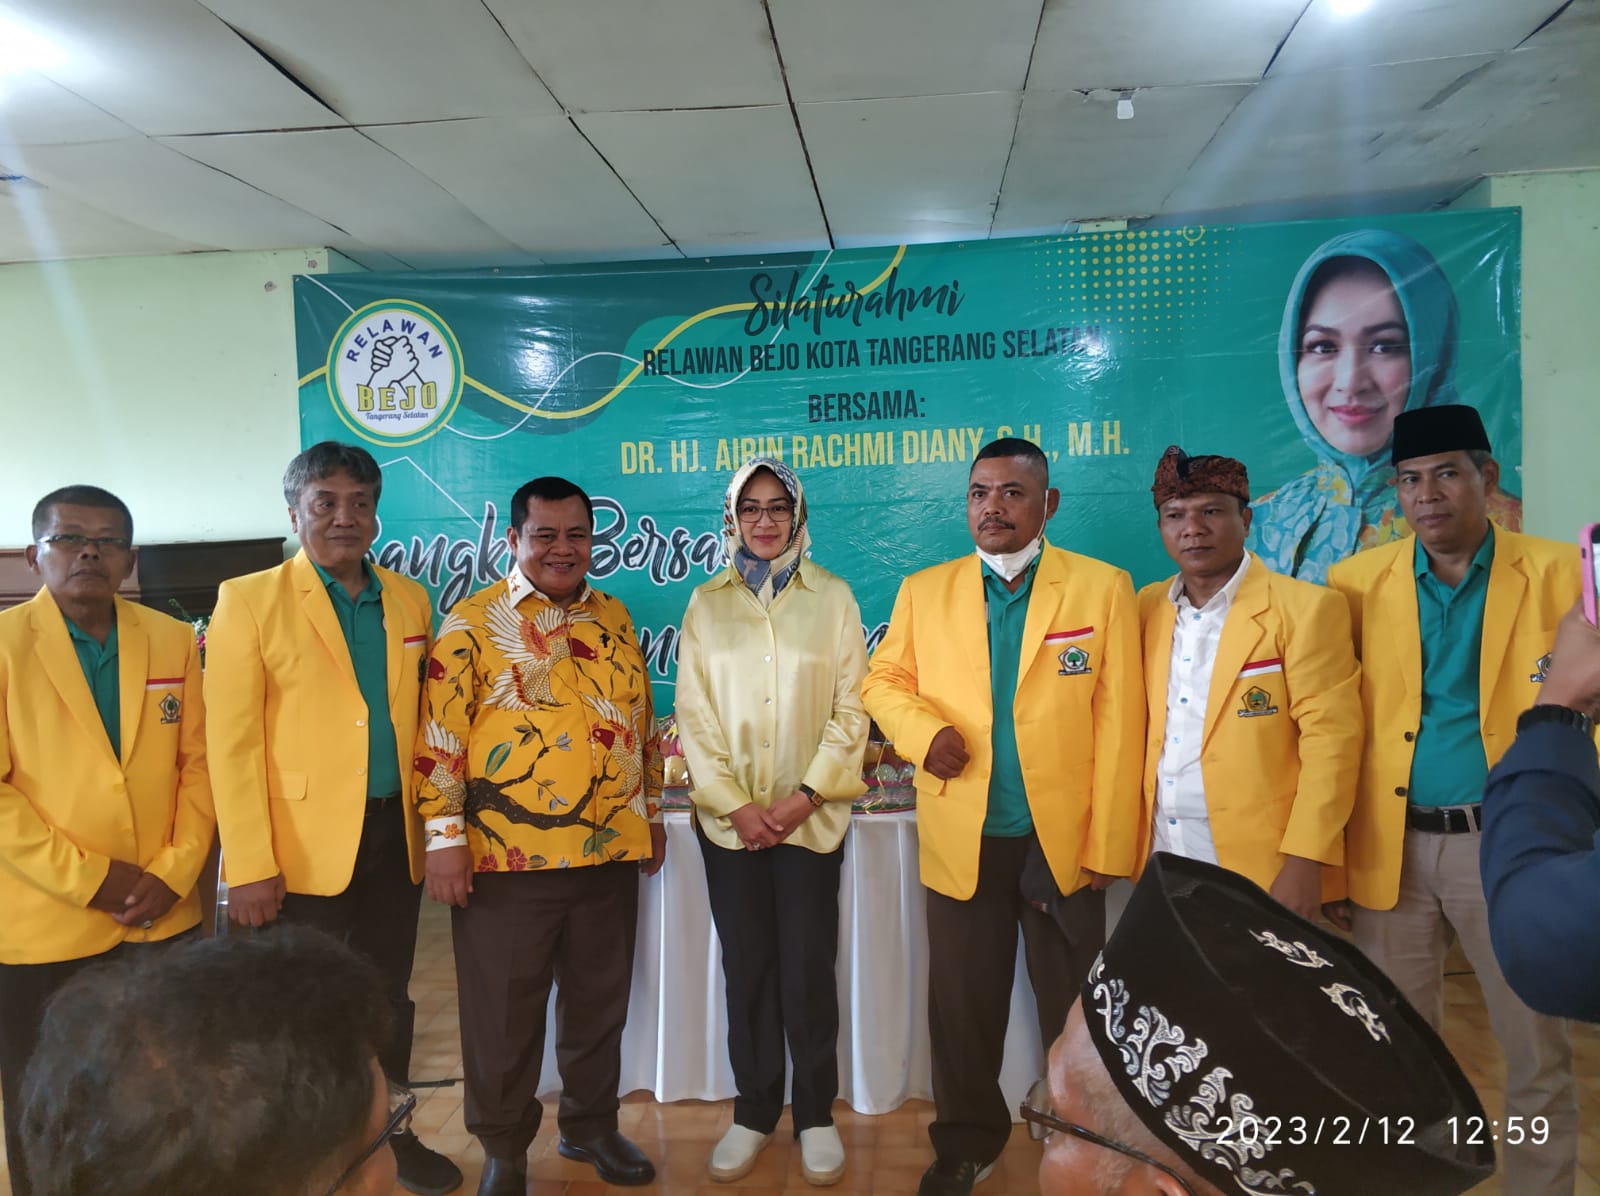 Relawan Bejo siap mendukung Airin Rachmi Diany menuju Banten Satu.